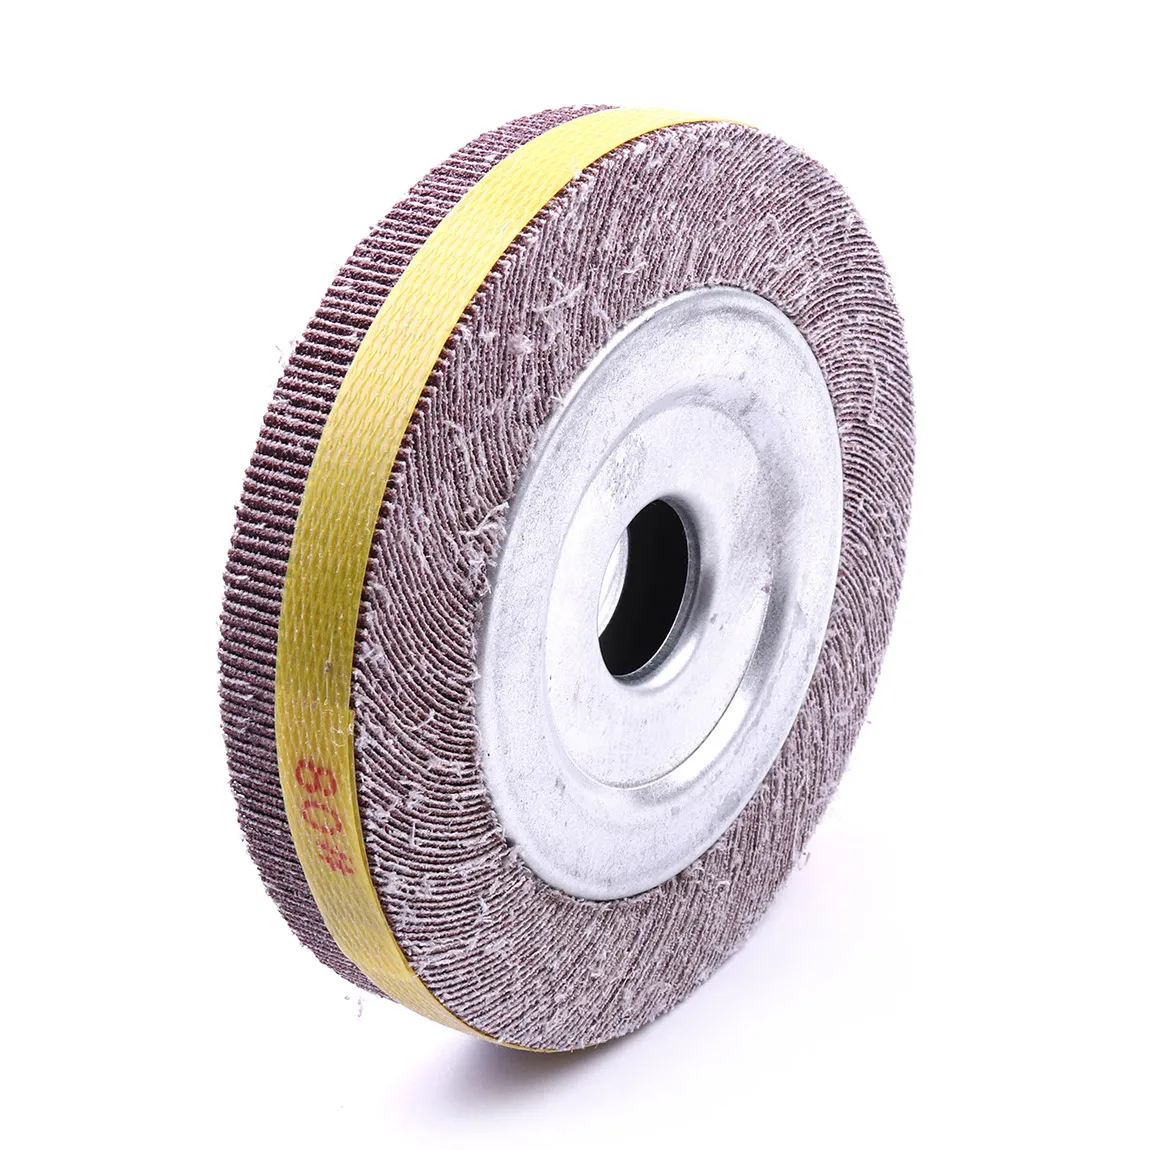 1 шт. абразивный лоскут Wheel" x1" x" Оксид алюминия 80 зернистый немонтированный шлифовальный диск